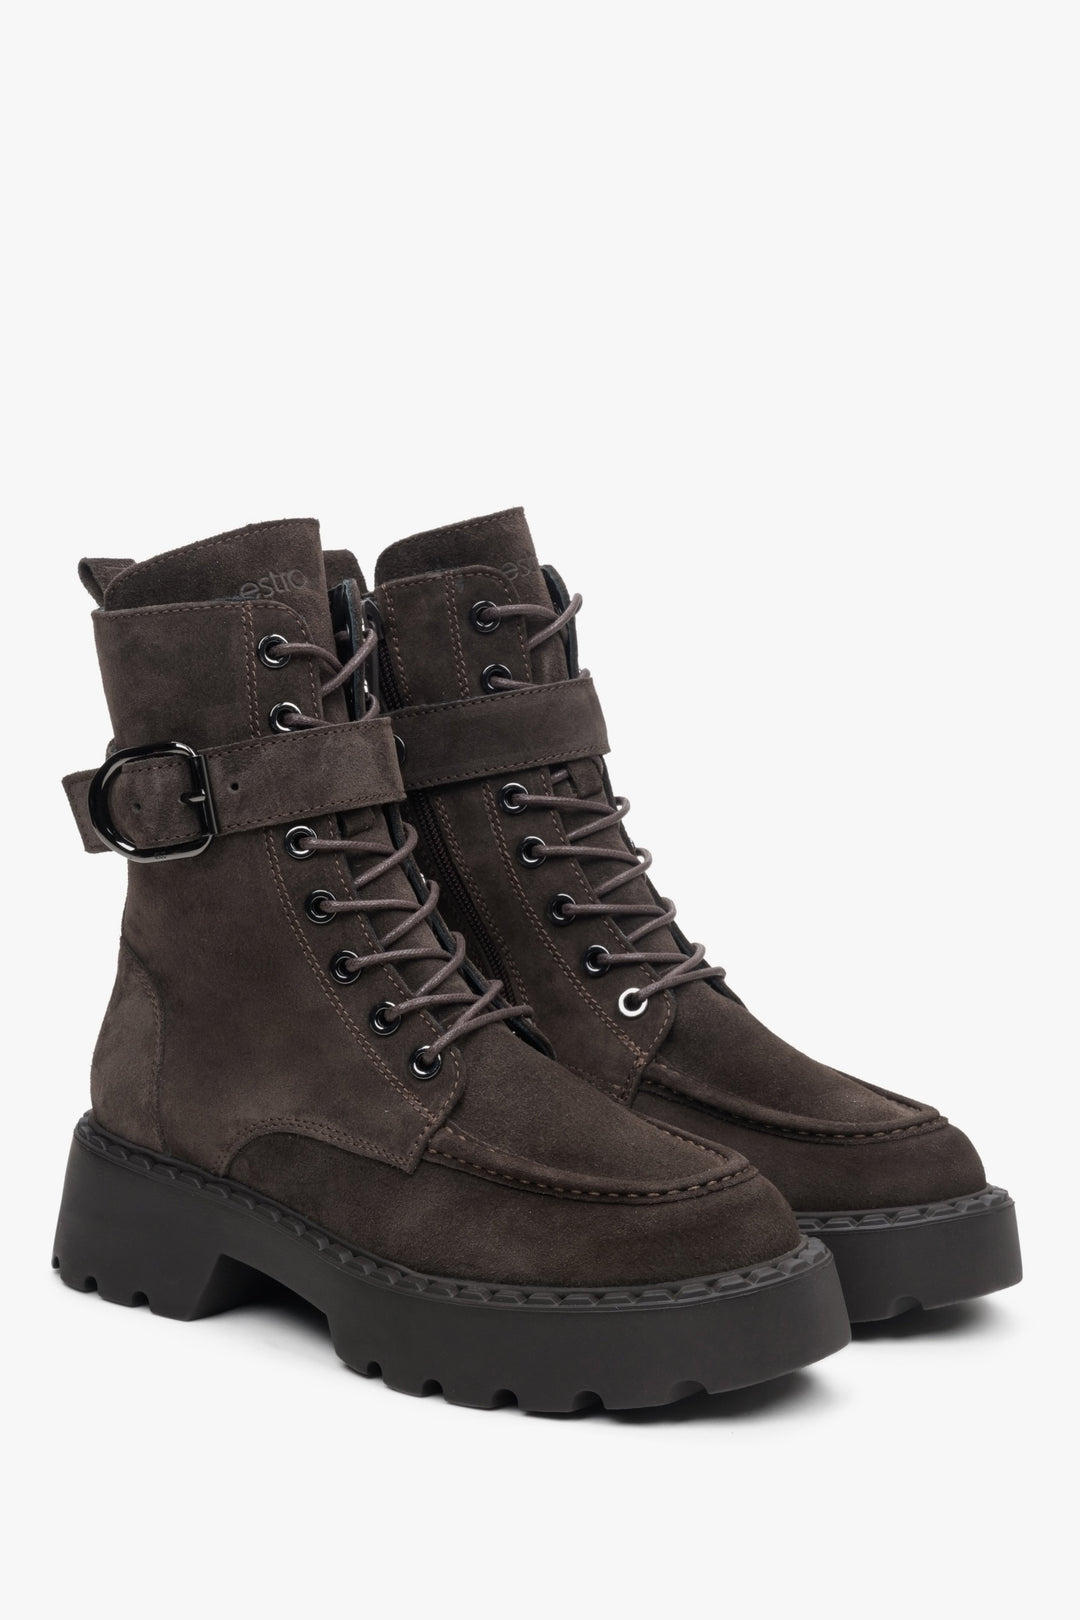 Women's high dark brown velour boots by Estro.